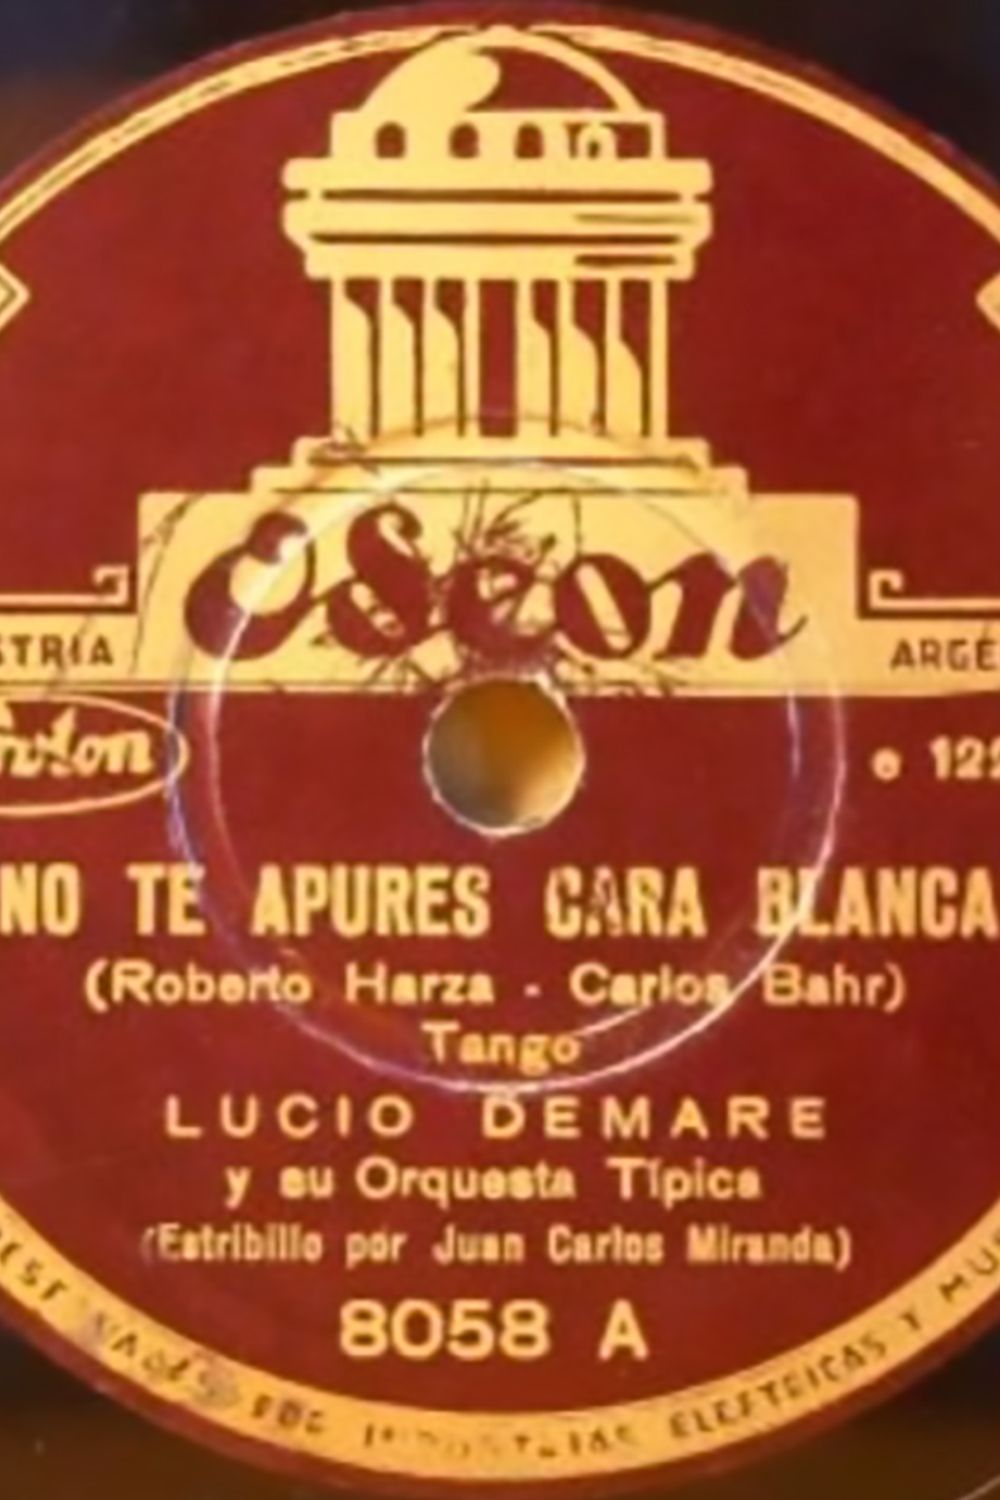 "No te apures Carablanca" por Lucio Demare con Juan Carlos Miranda. Disco  vinilo del tango.